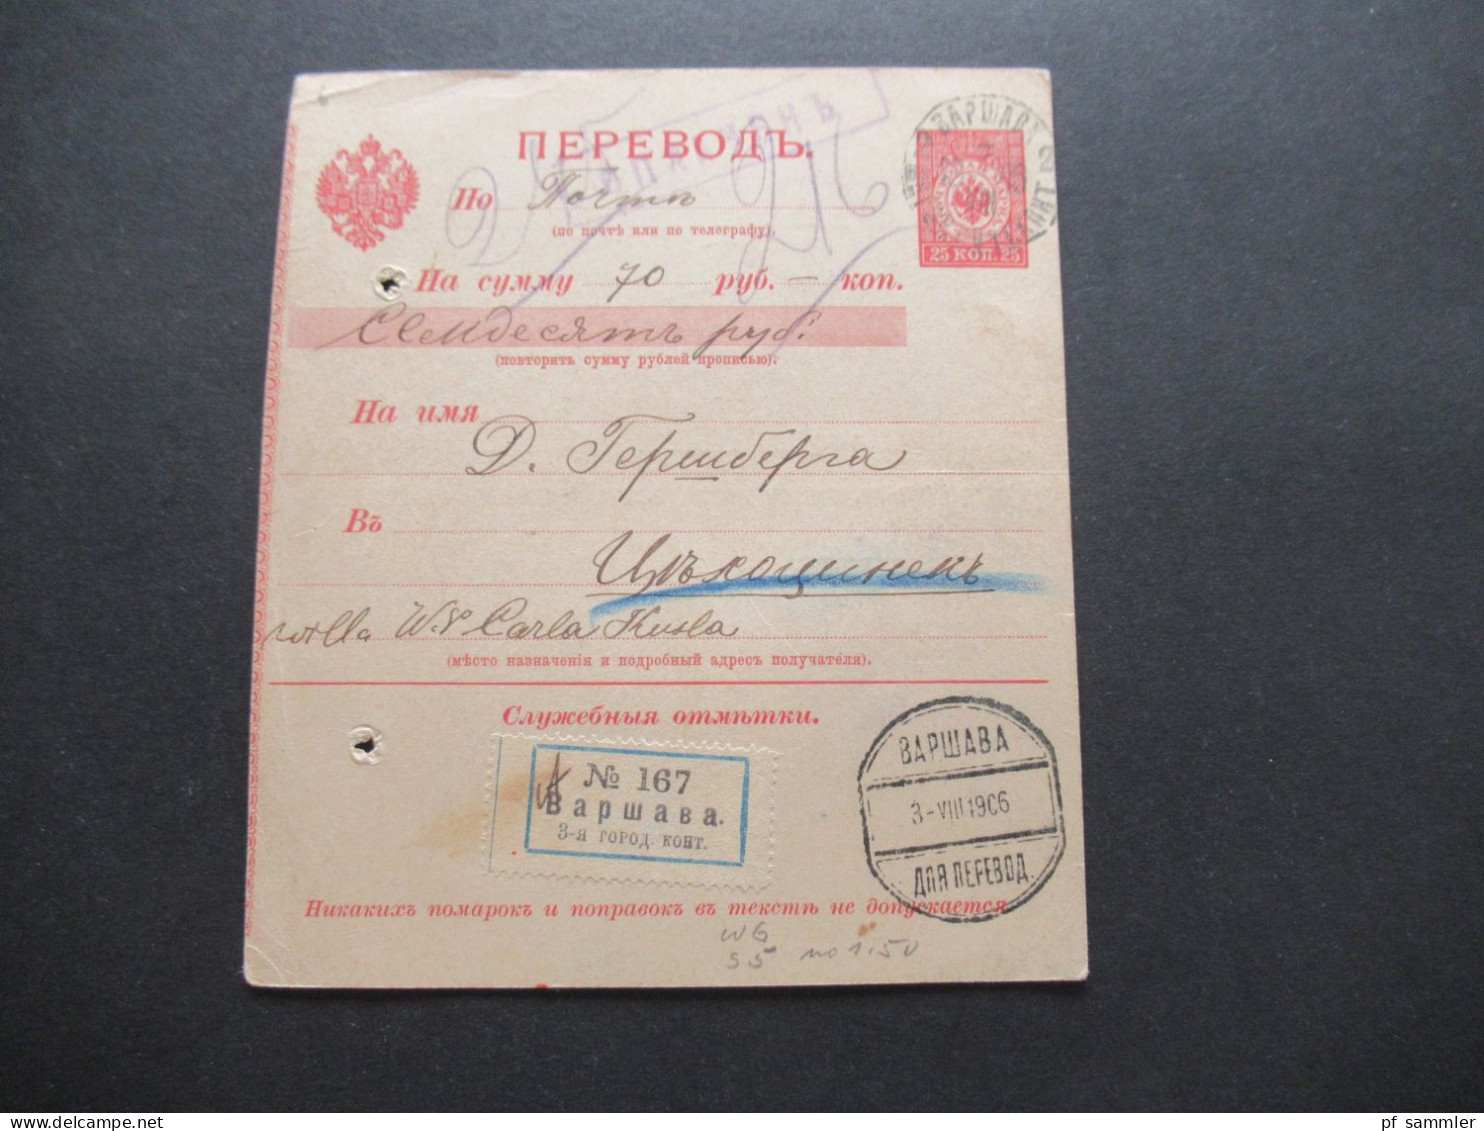 Russland / Polen 1906 Postanweisung Stempel Bapwaba Warschau Mit Einigen Stempeln! Einschreiben / Reko - Covers & Documents